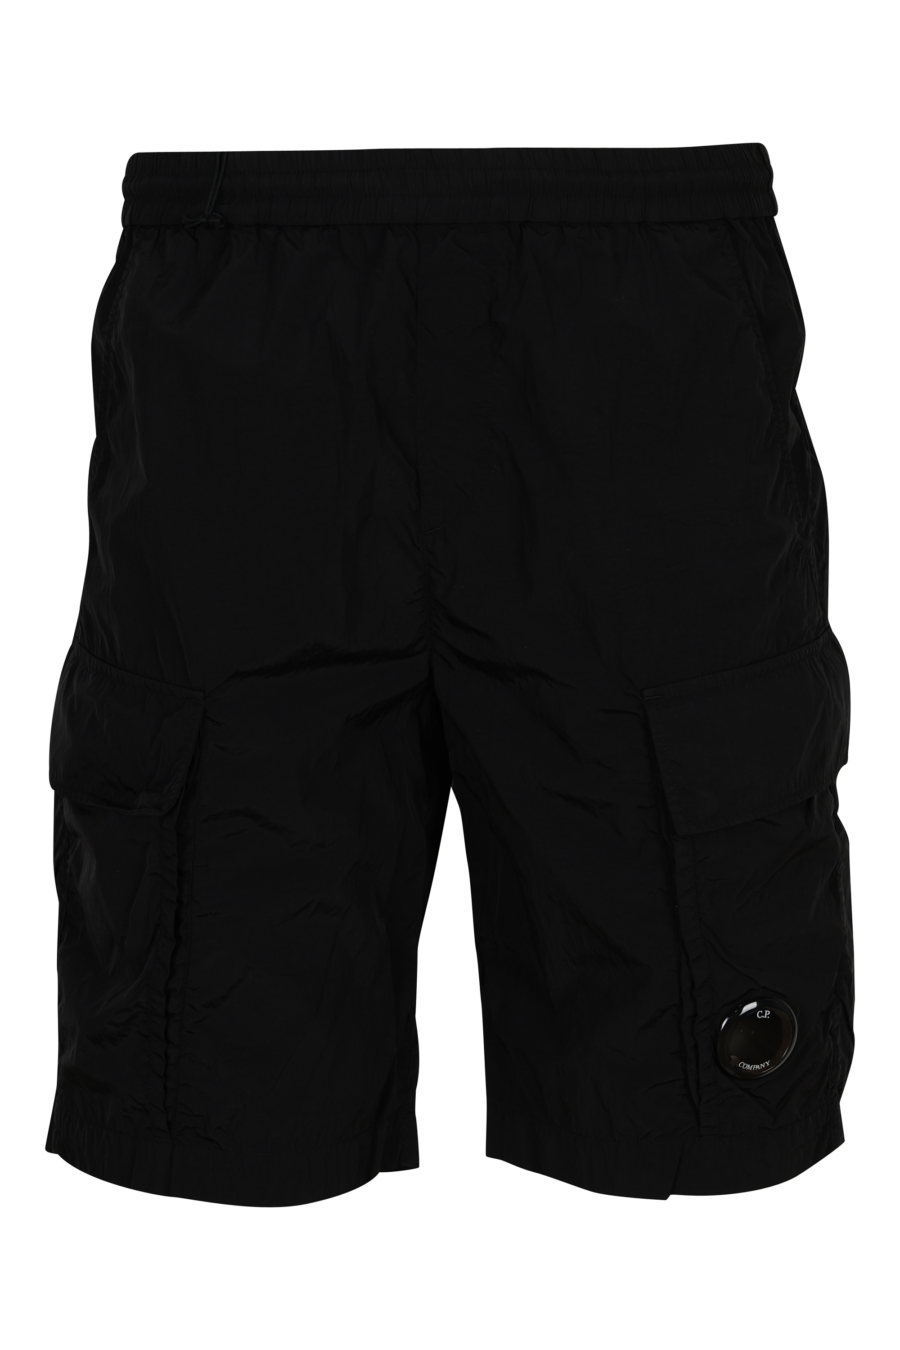 Pantalón corto negro con minilogo lente - 7620943785616